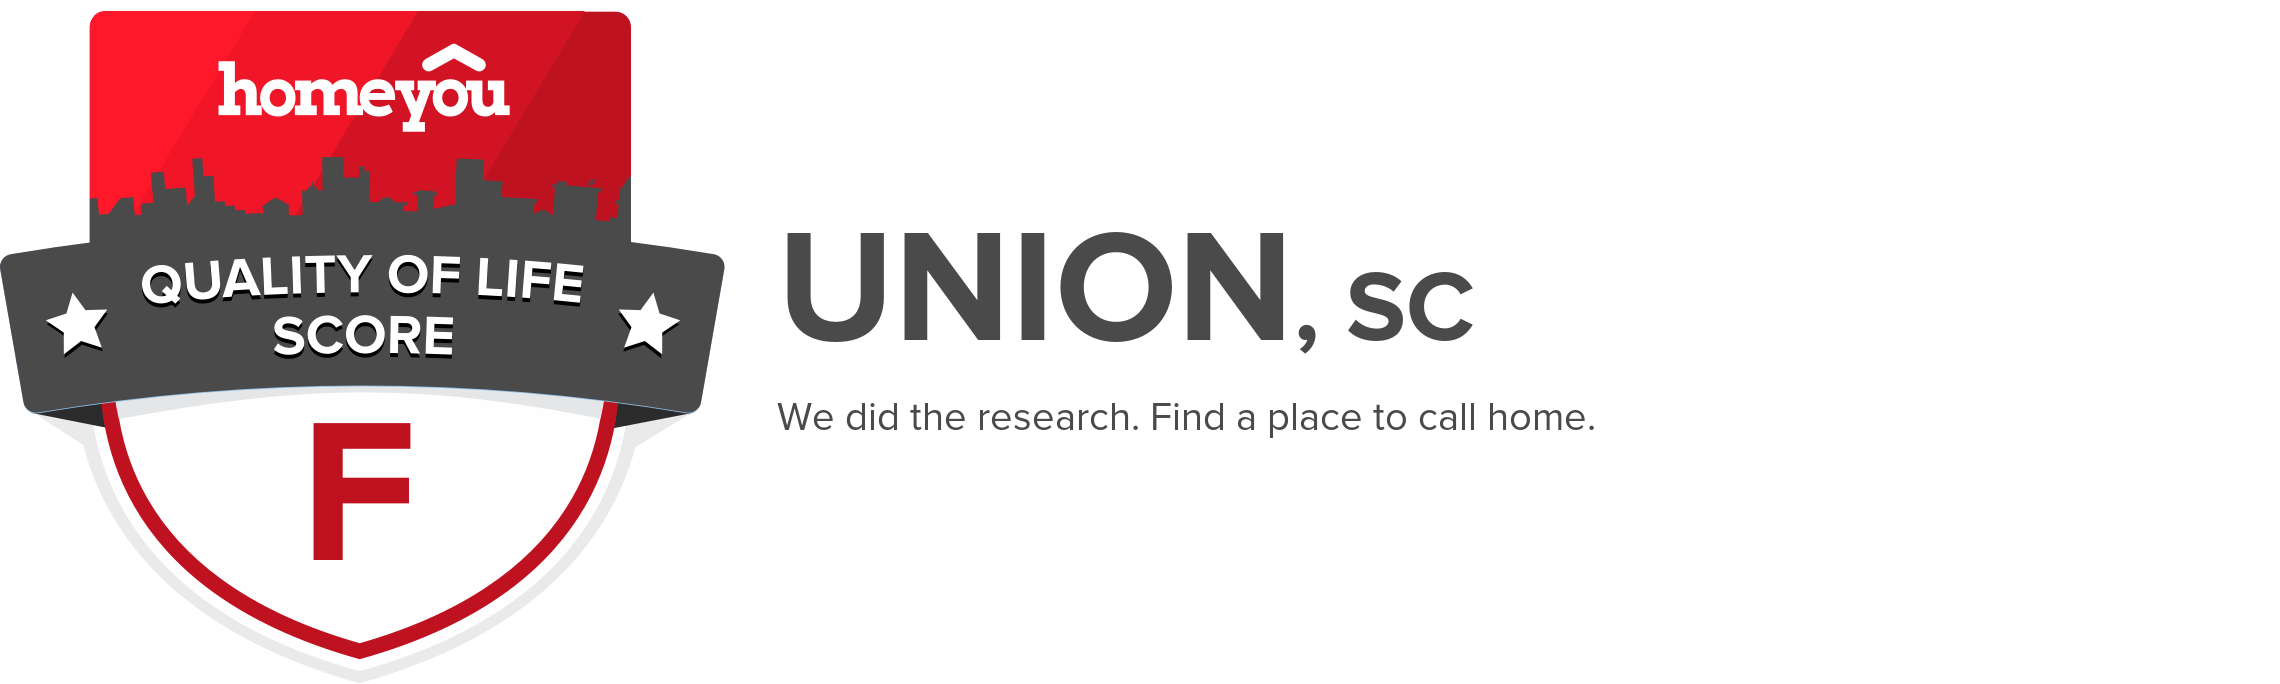 Union, SC